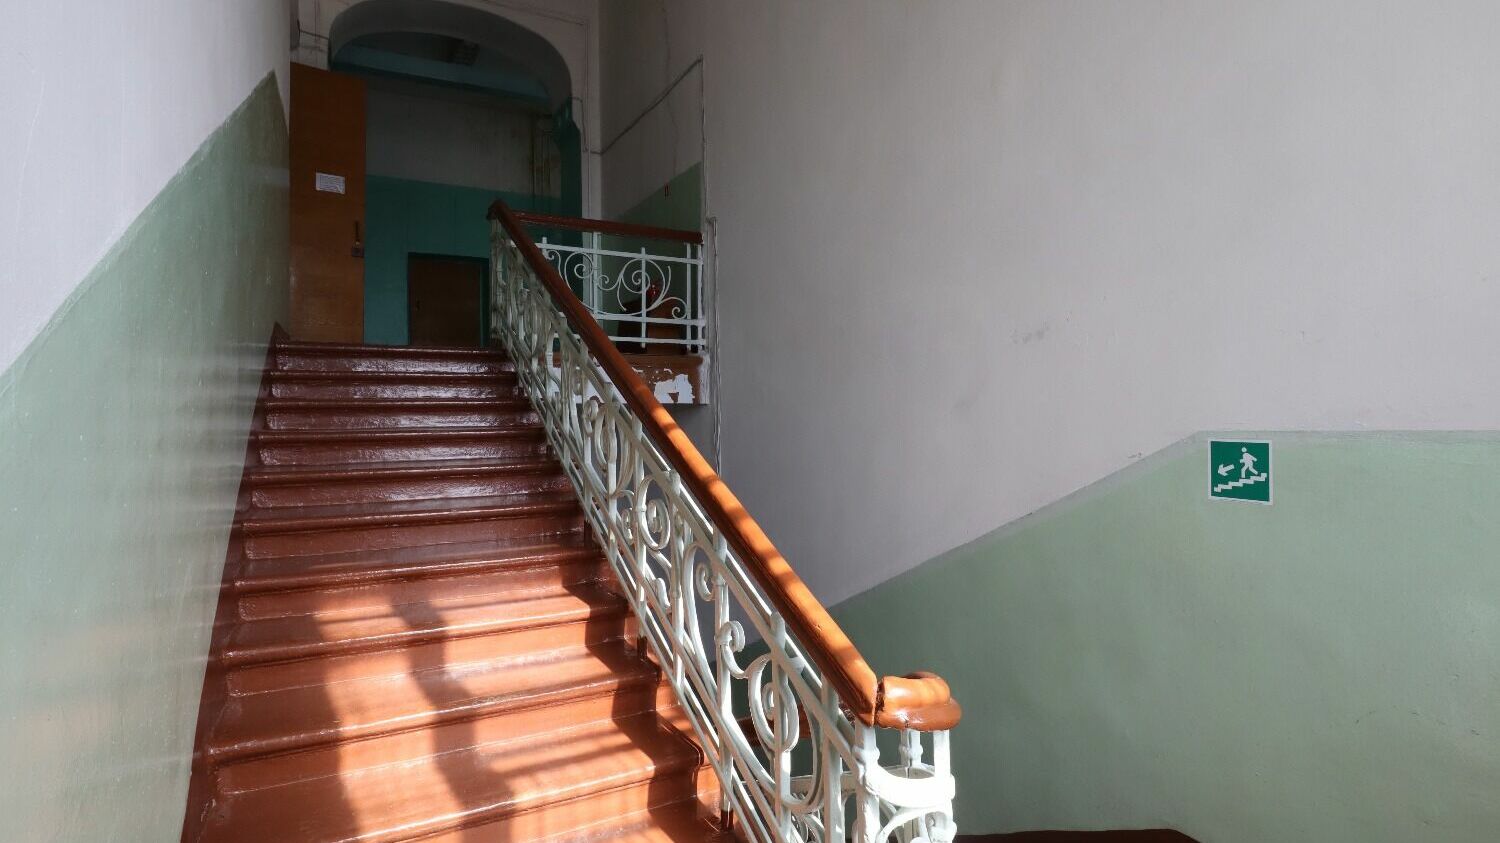 По словам Александра Кошелева, отичительная особенность школы на Якушева - идеальная сохранность исторической лестницы